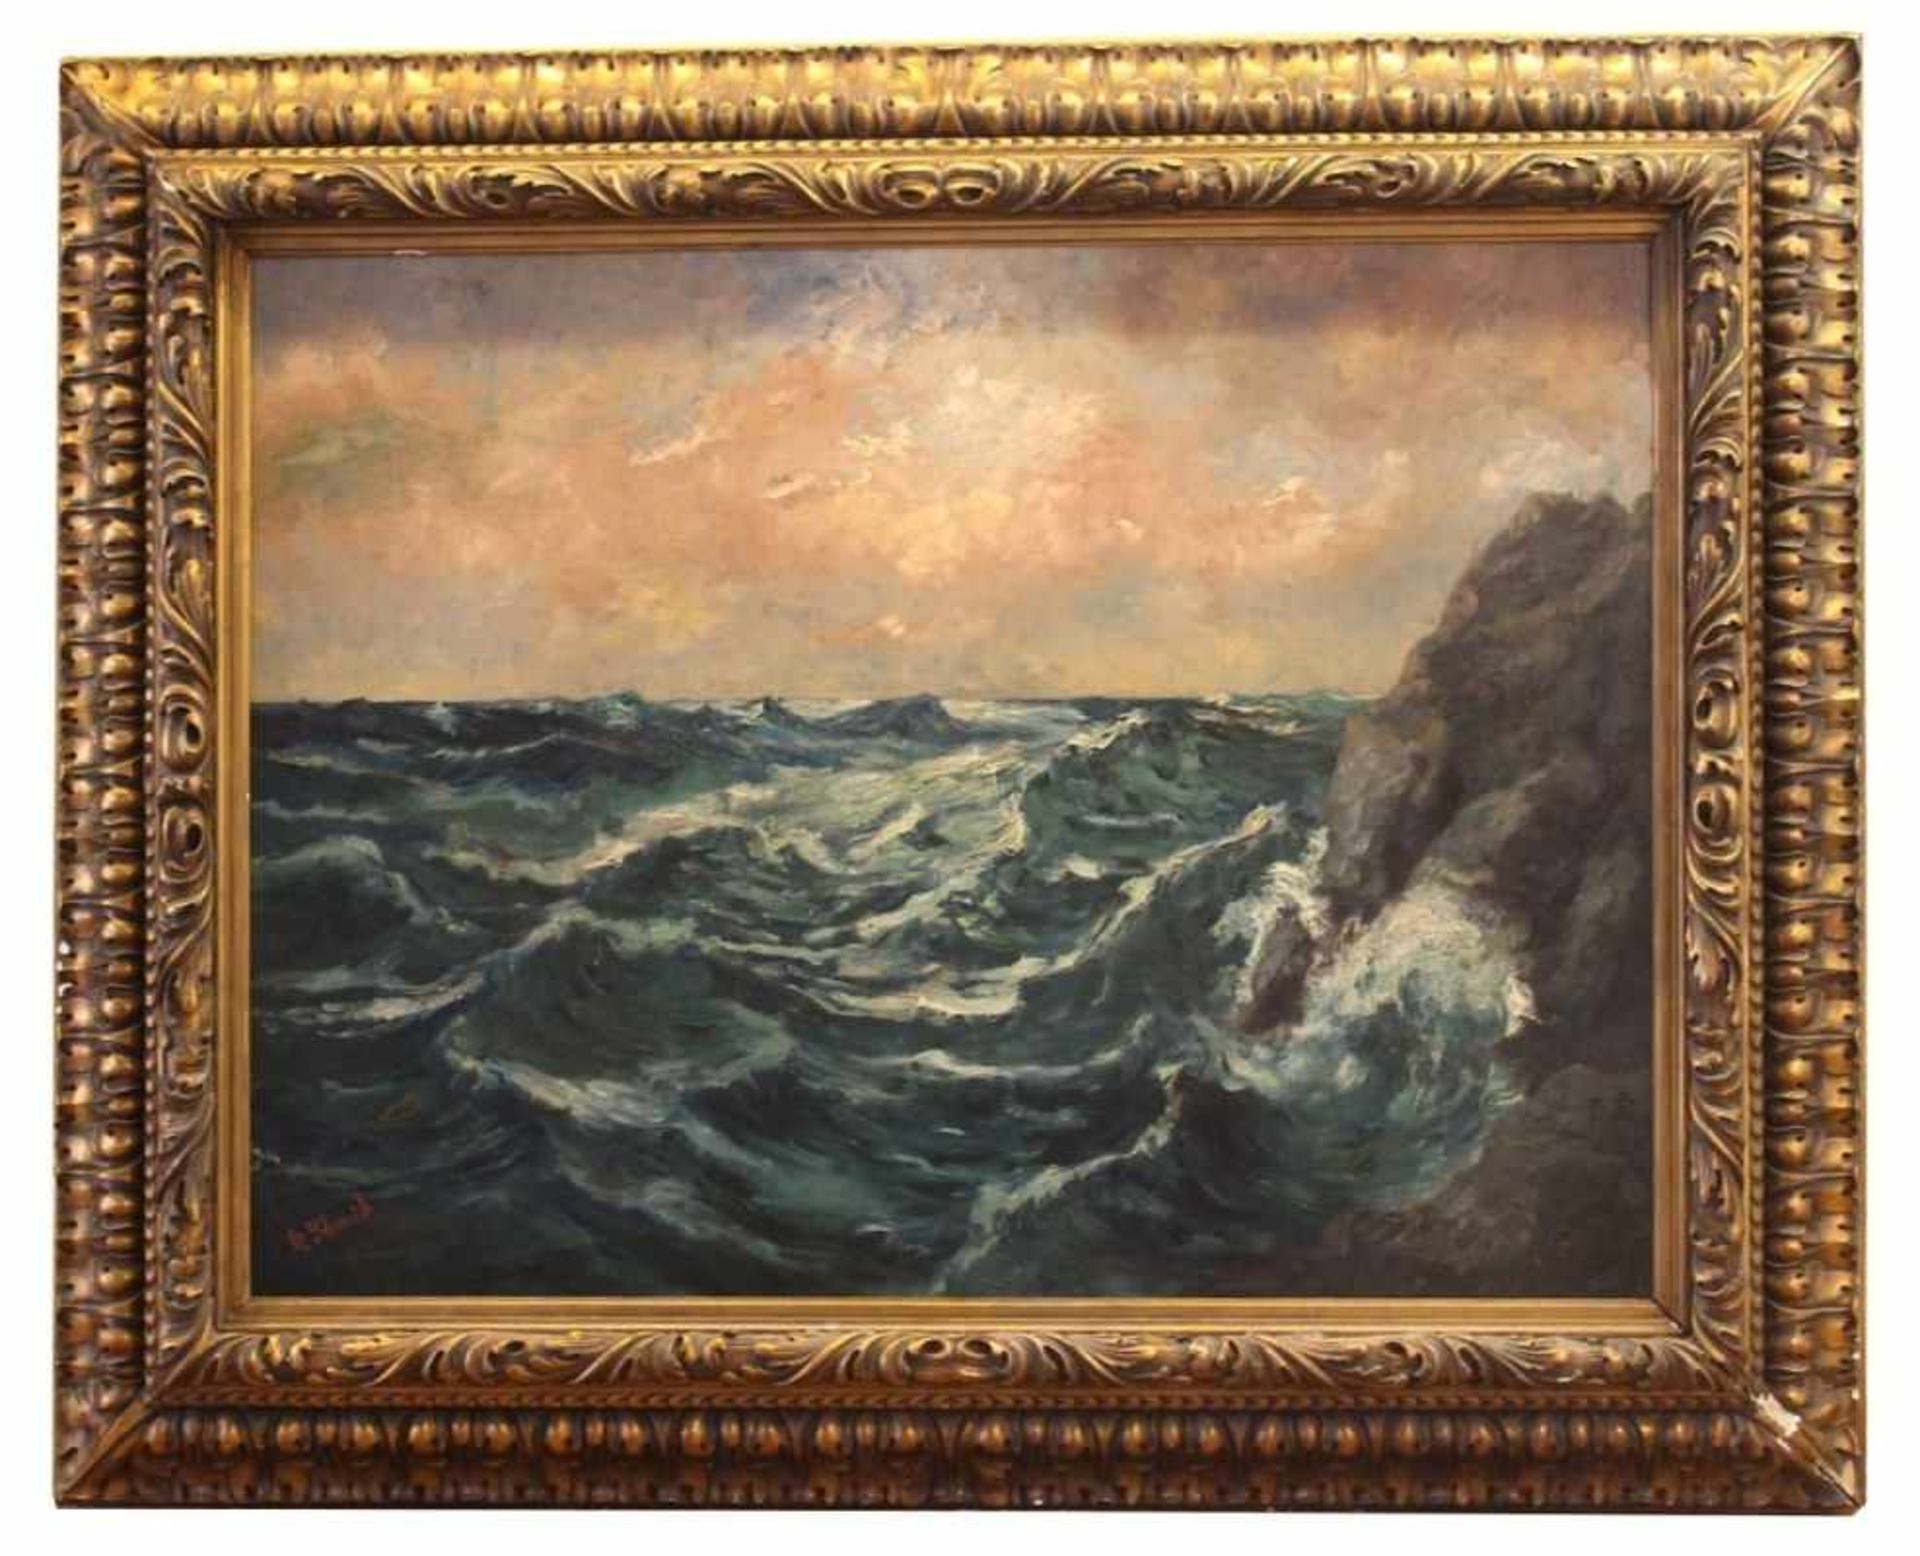 Gemälde - R. Schmid (19./20.Jahrhundert) "Stürmische See", l.u. signiert, Öl auf Leinwand,